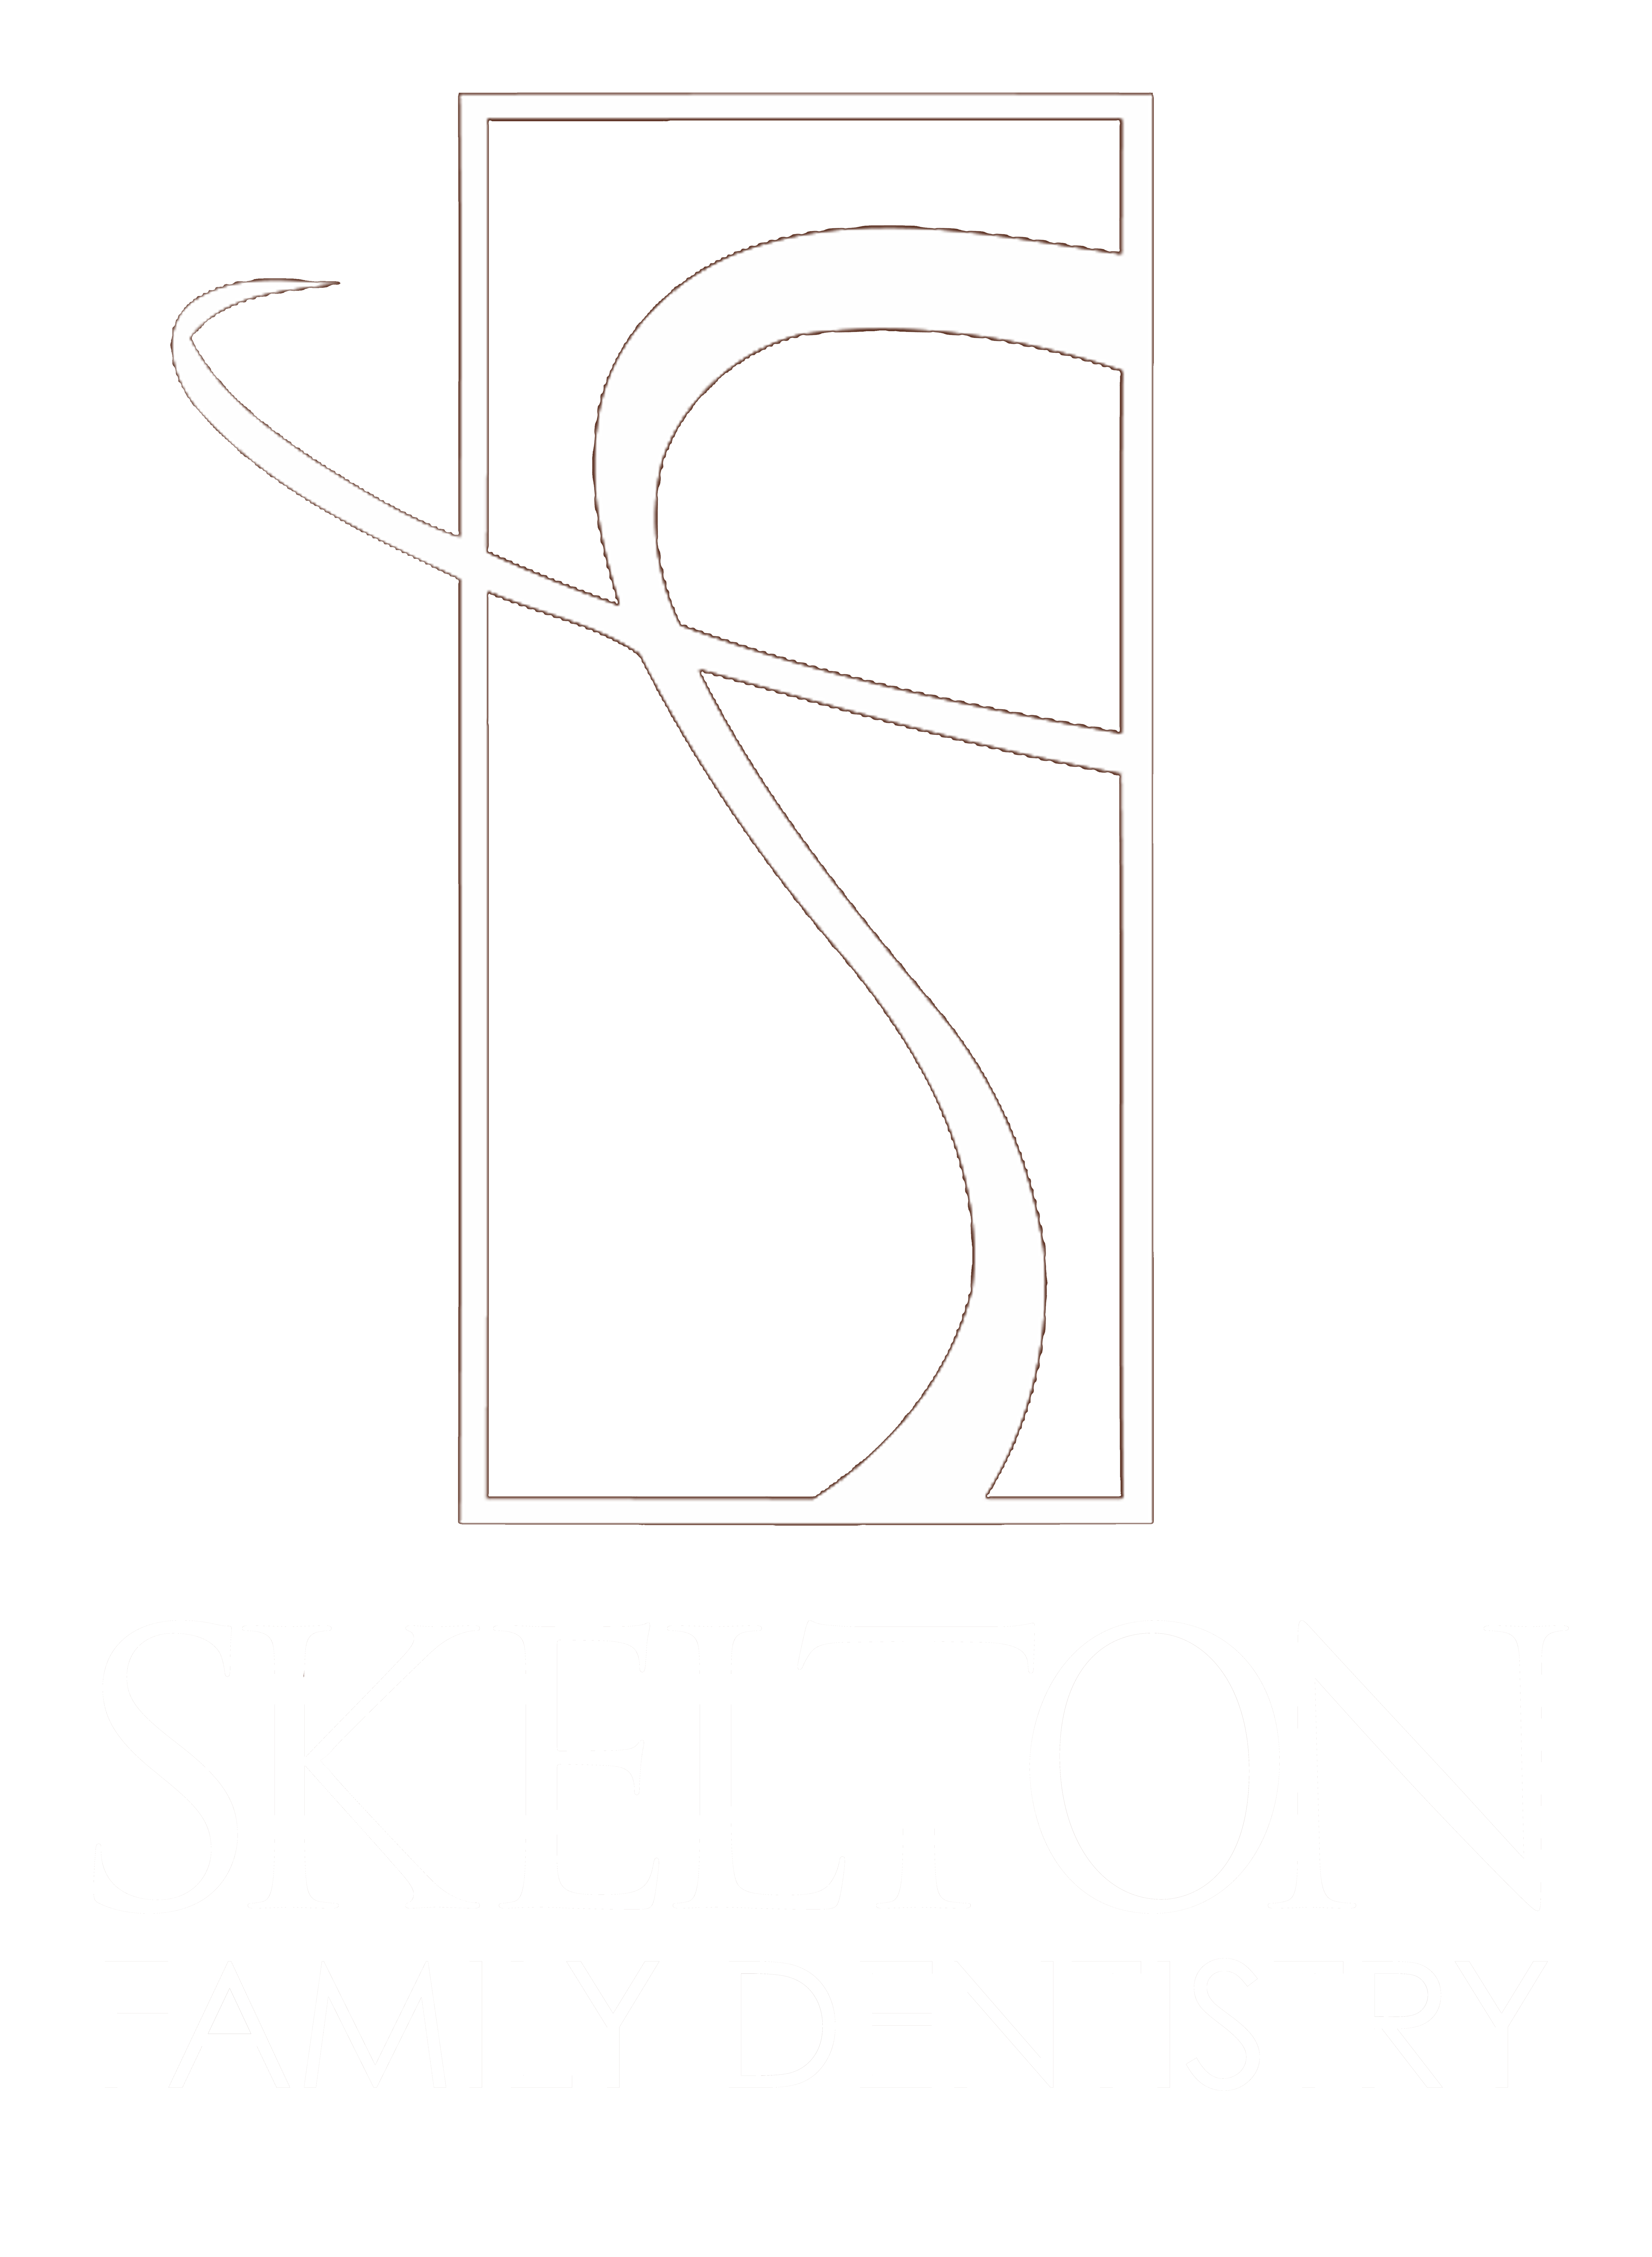 skelton family dentistry logo